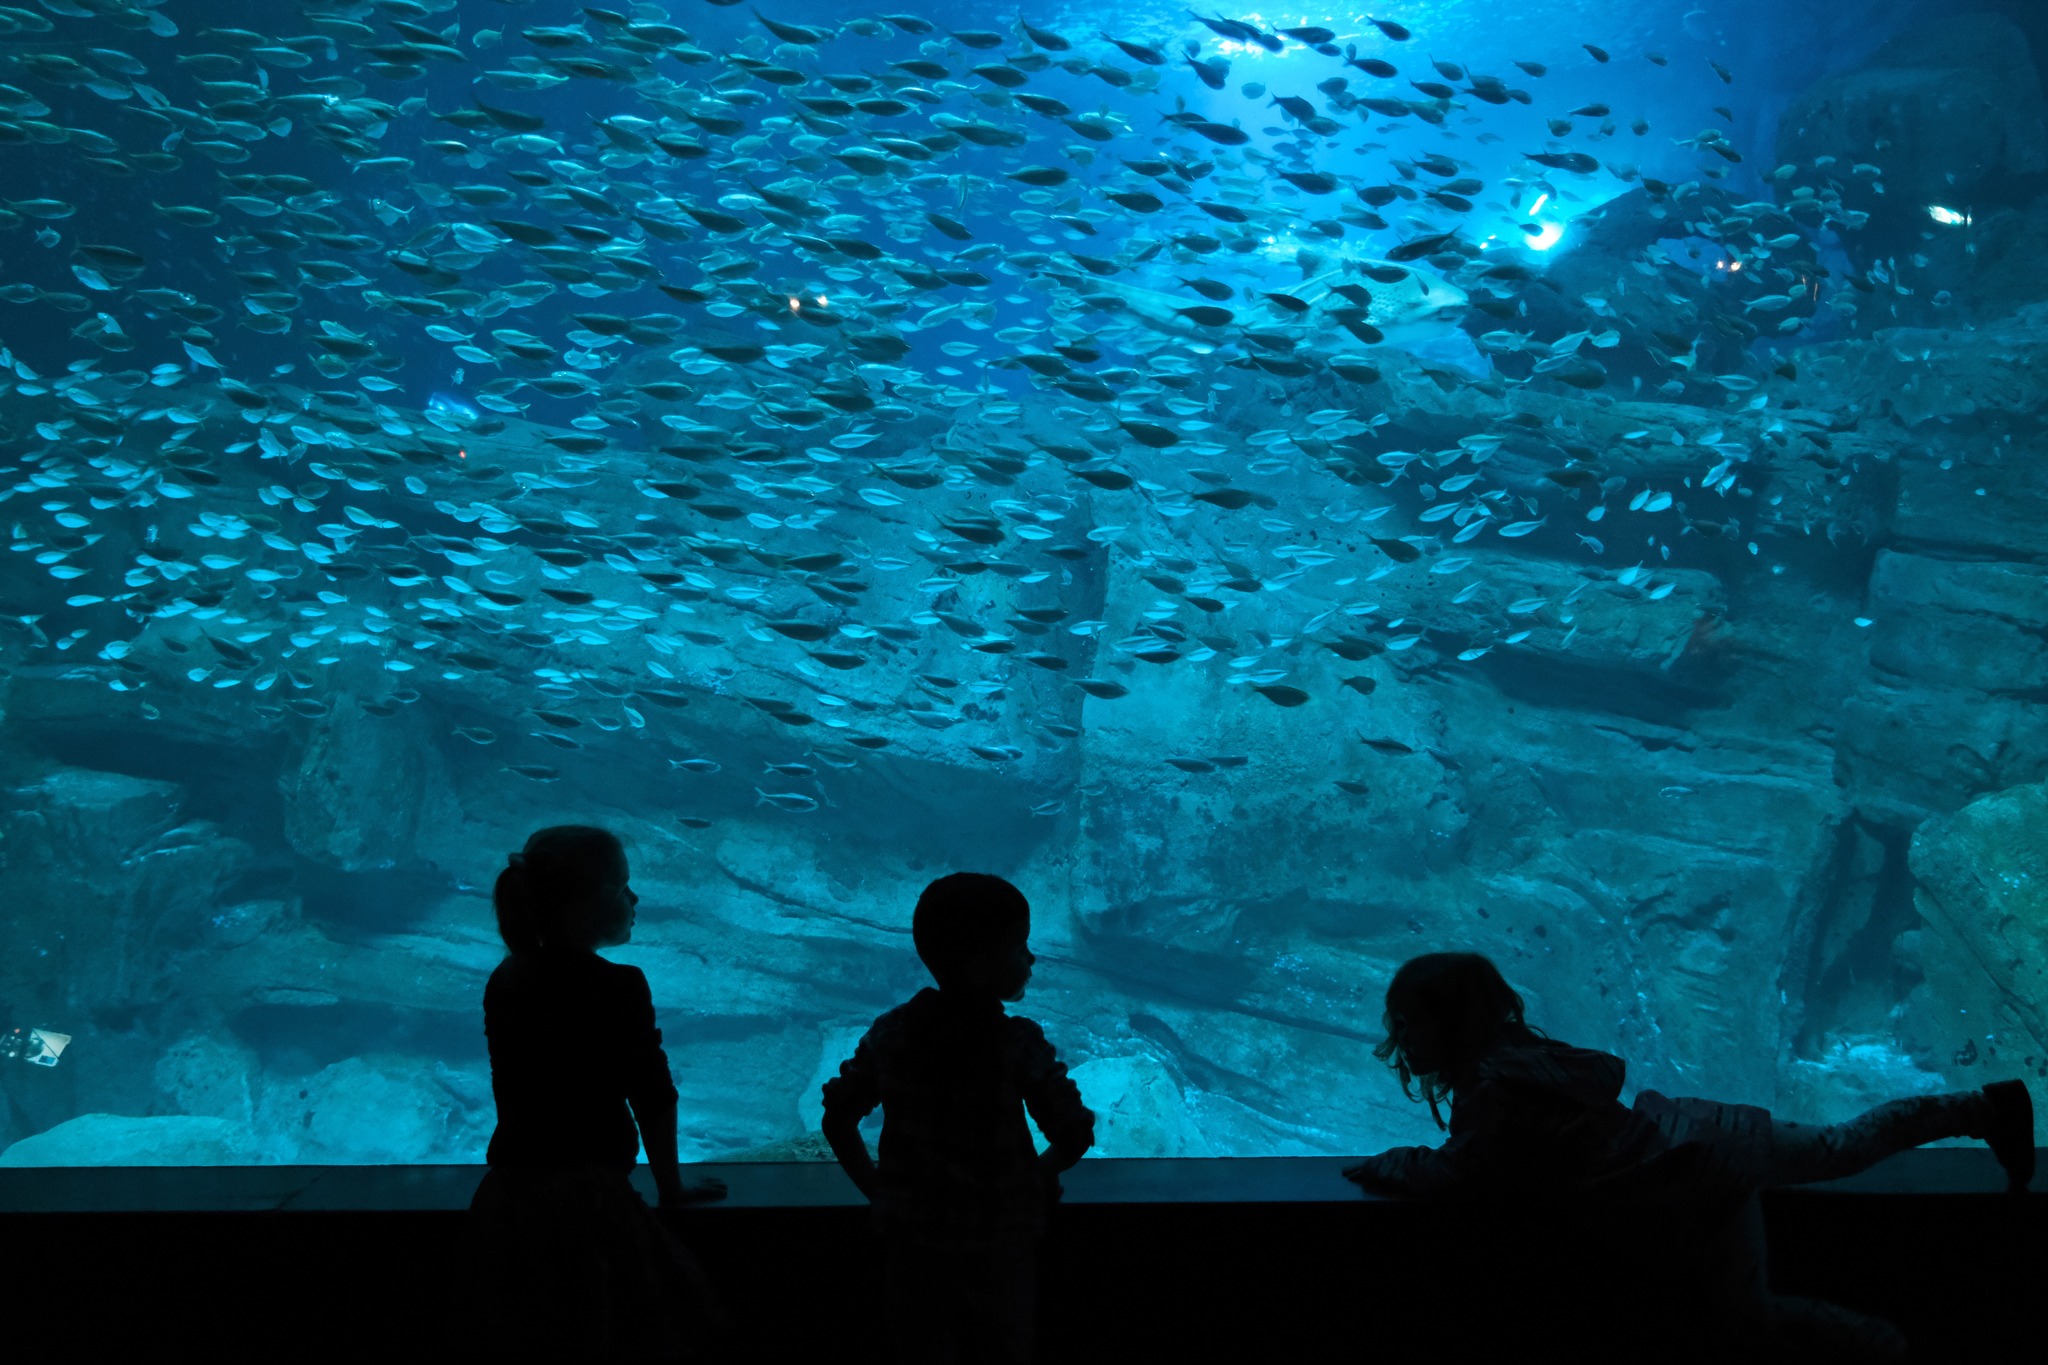 Aquarium de Paris Cinéaqua